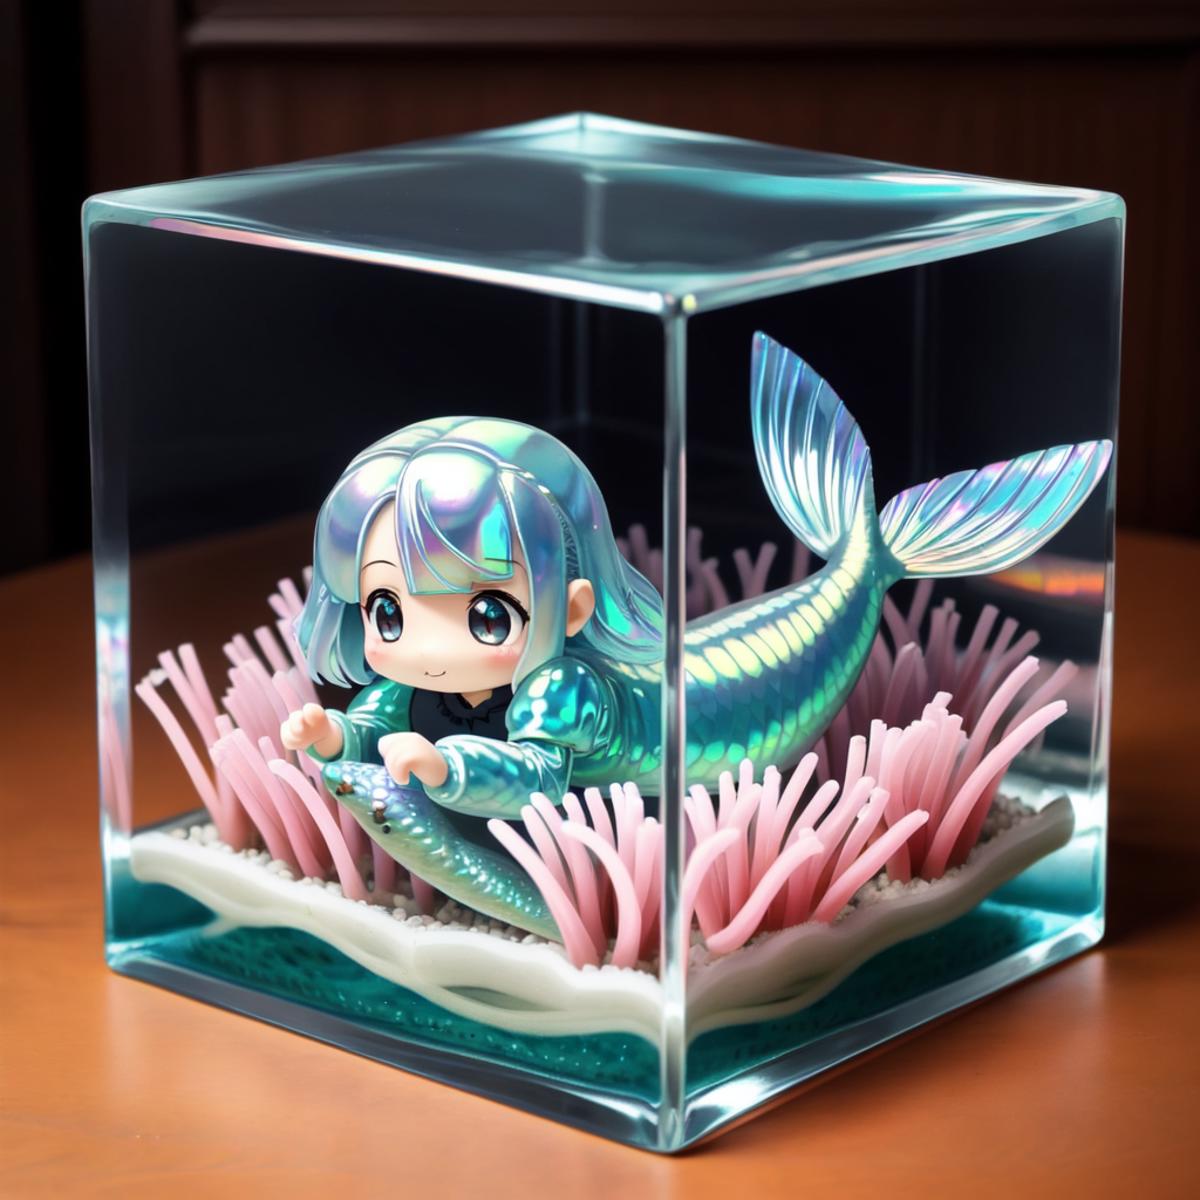 cubed_aquarium image by Liquidn2